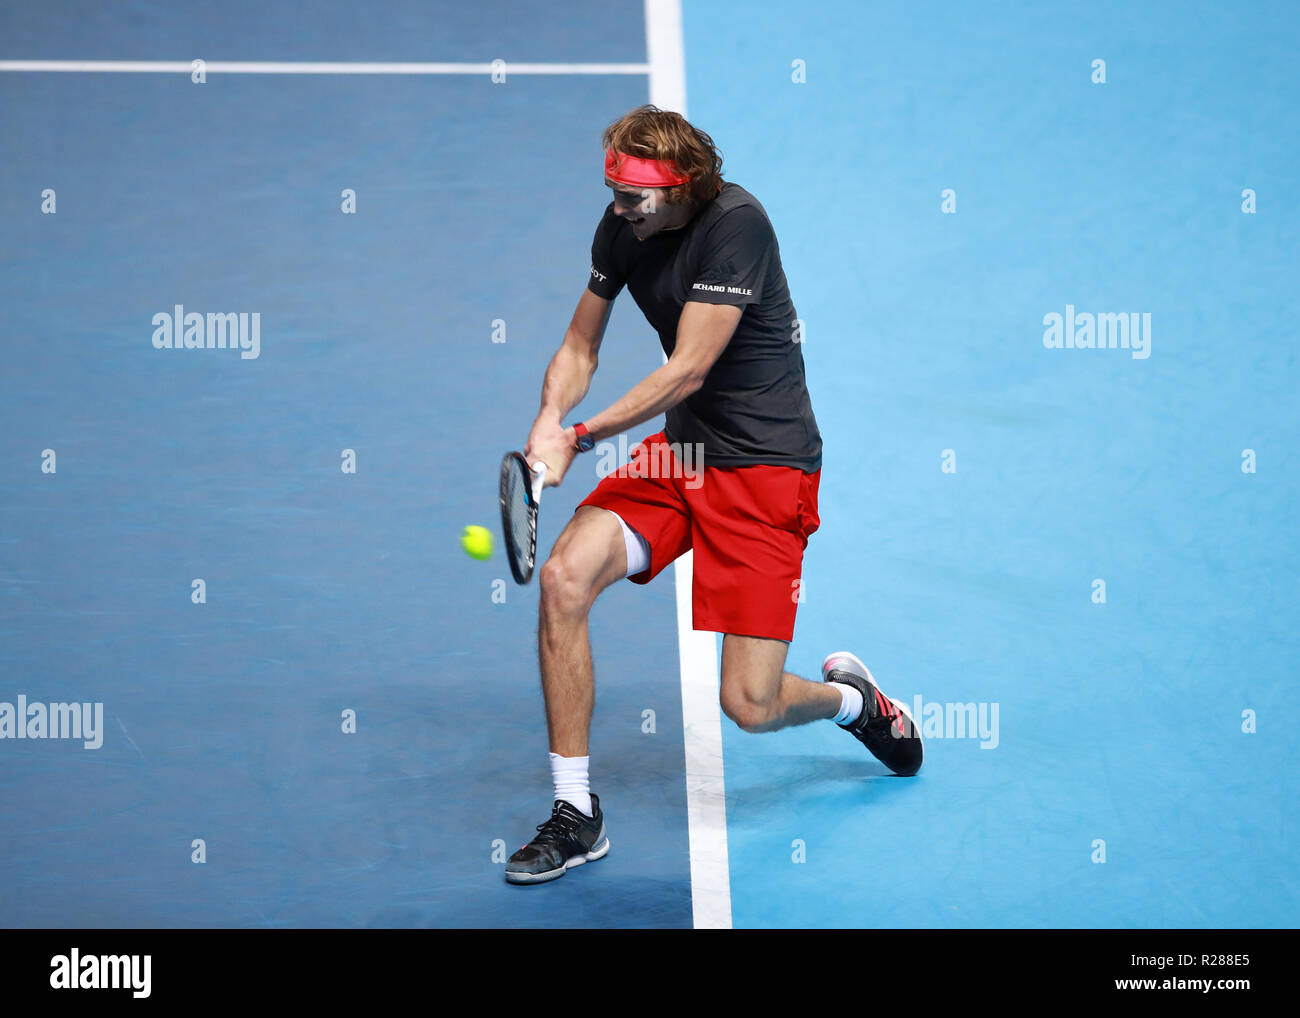 17 novembre 2018, O2 Arena, London, England ; Nitto ATP Tennis finale ; Alexander Zverev (GER) avec un tir du revers dans son match contre Roger Federer (SUI) Banque D'Images